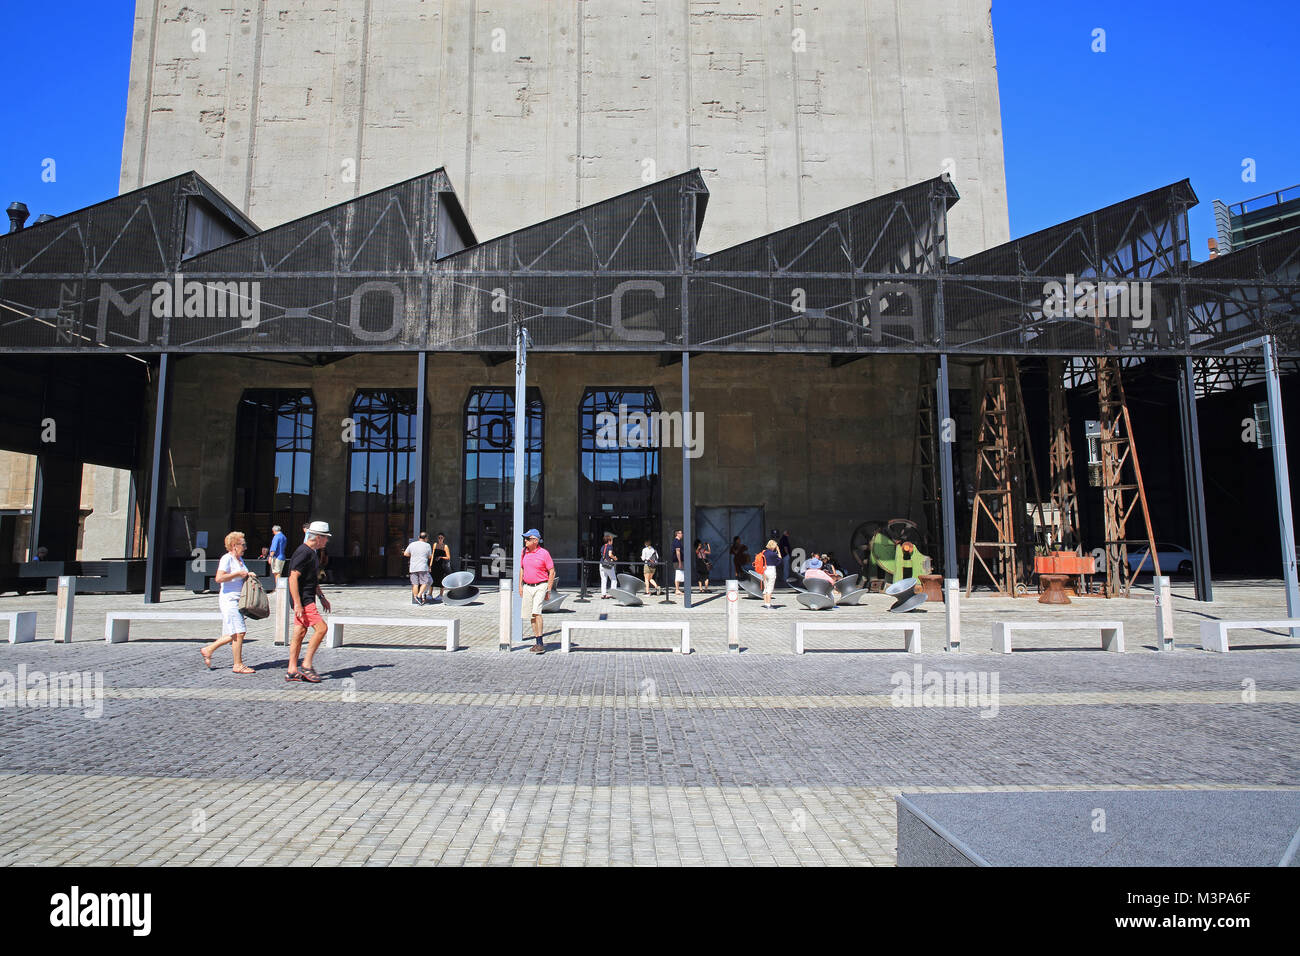 Äußere des neuen Zeitz MOCAA, in einem historischen Getreidesilo Gebäude, entworfen von Thomas Heatherwick, an der V&A Waterfront in Kapstadt, Südafrika Stockfoto